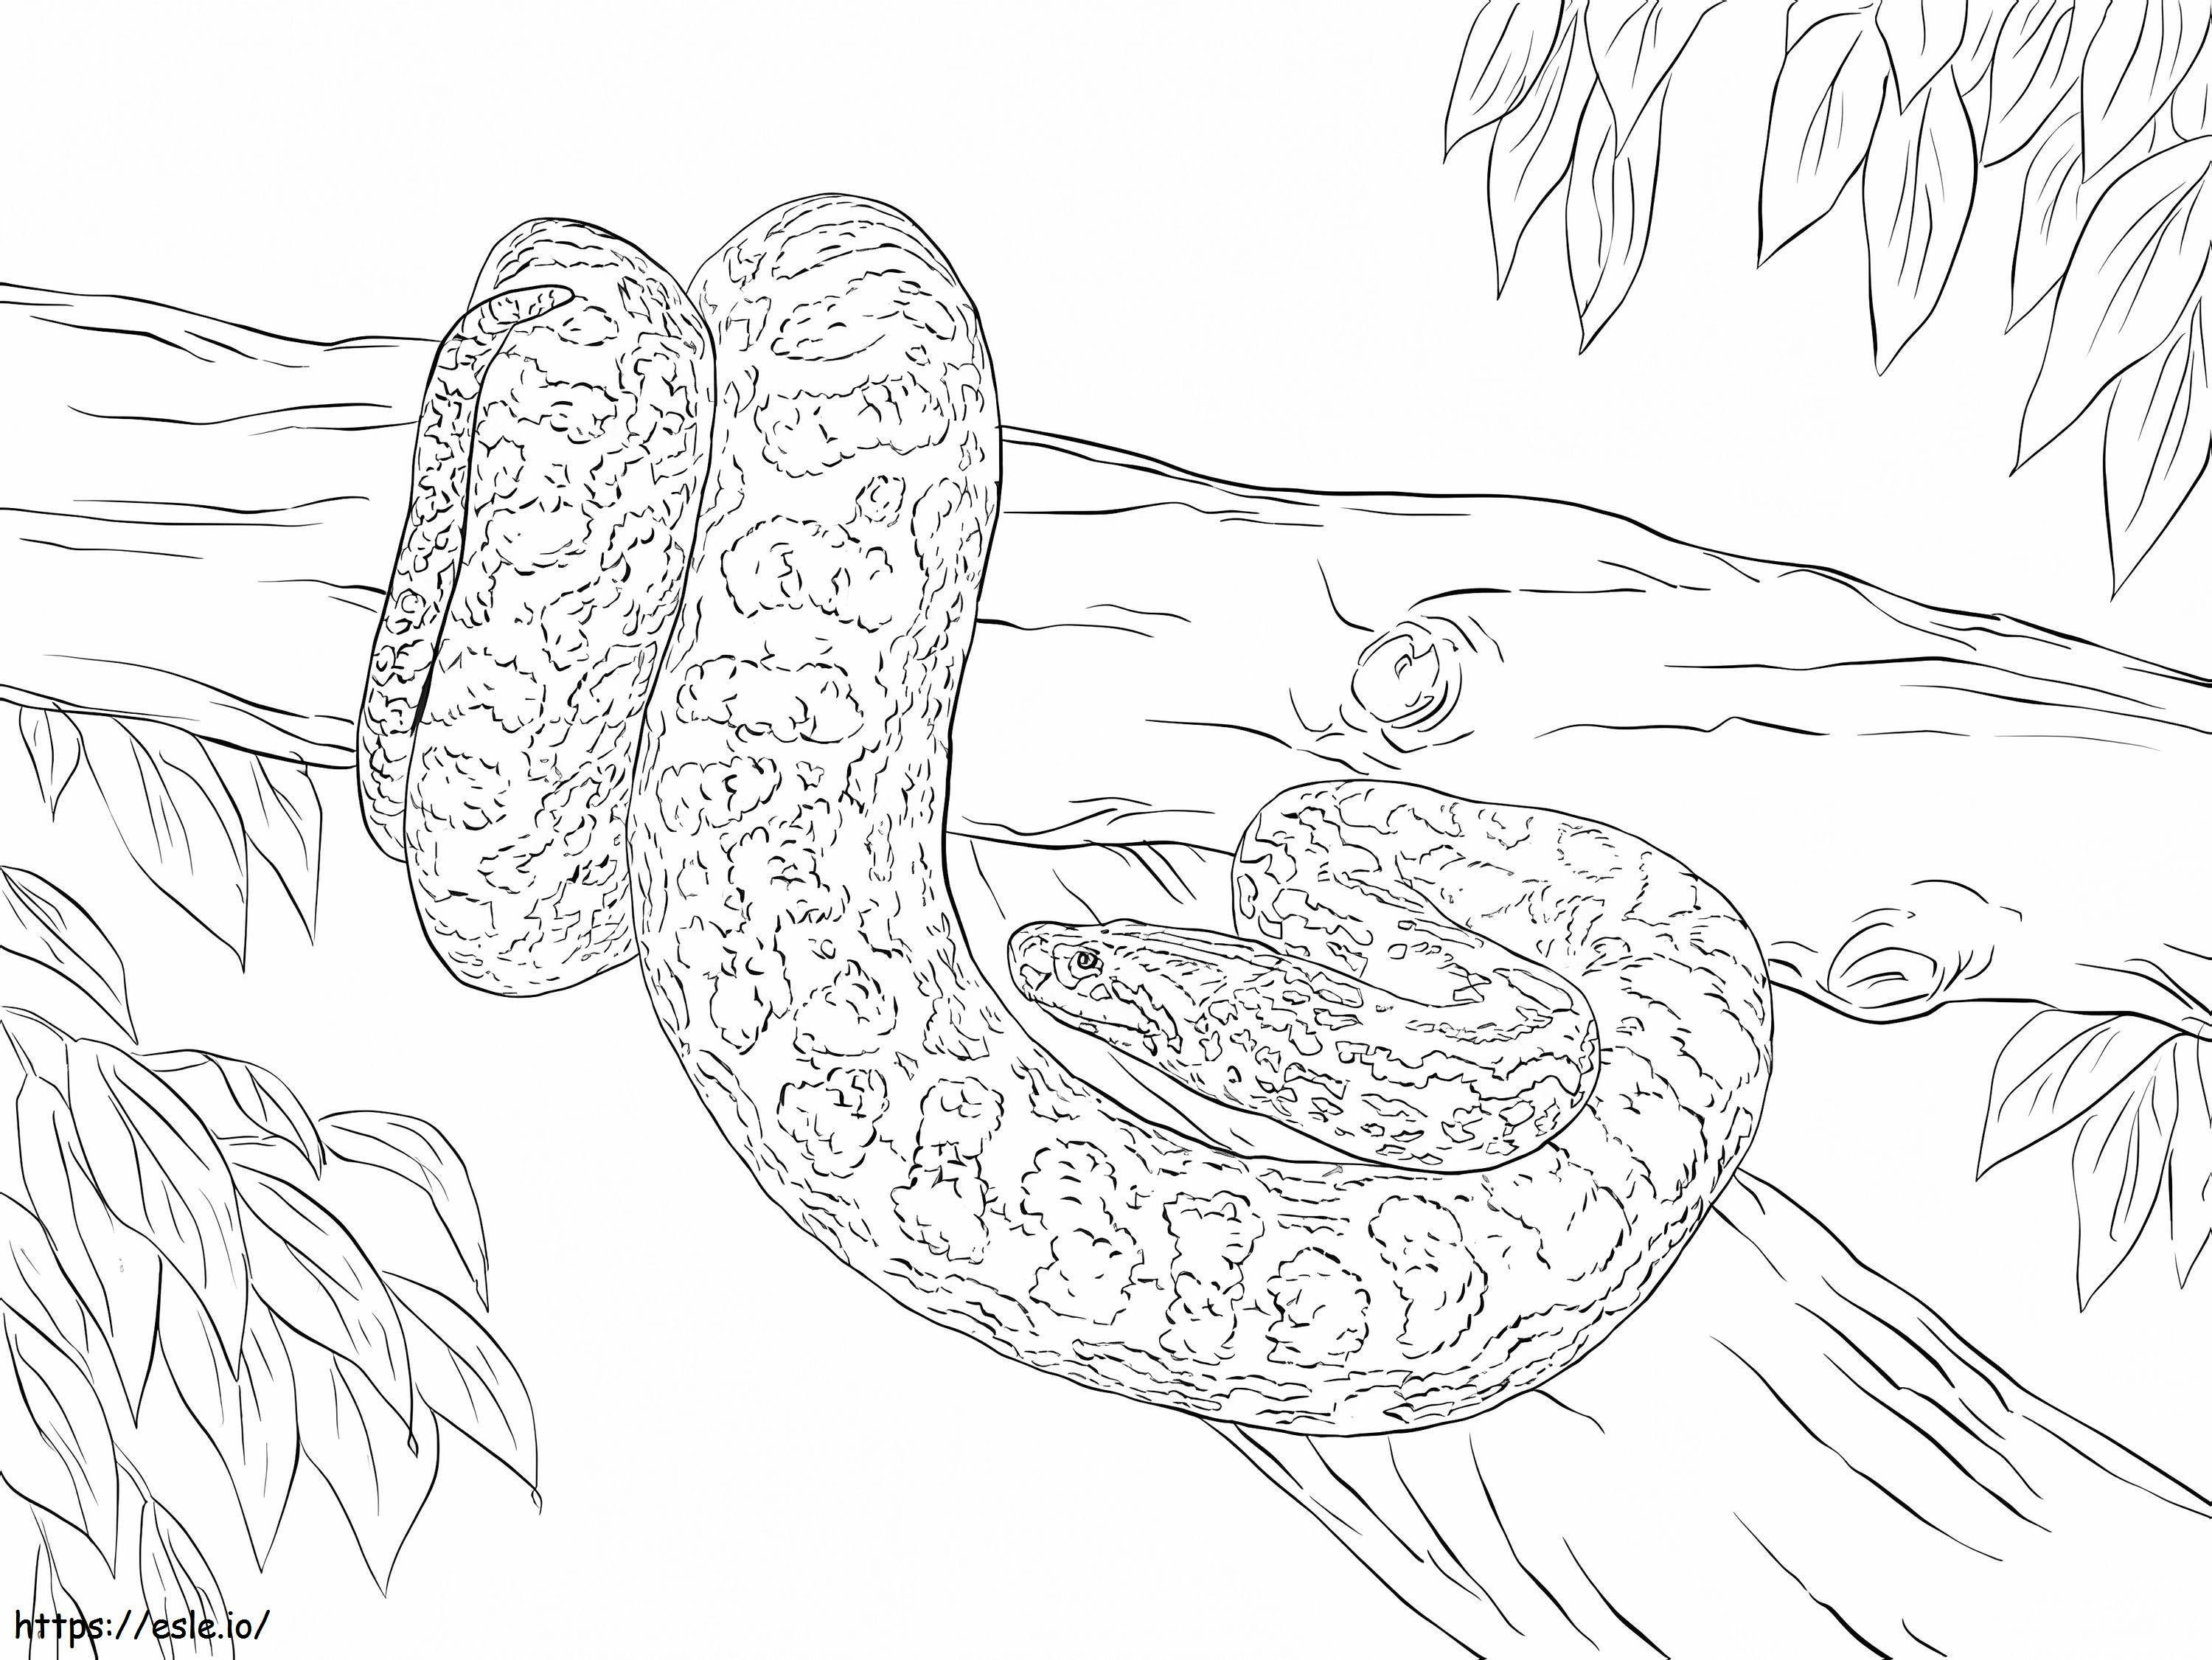 Anaconda Gialla Sul Ramo da colorare